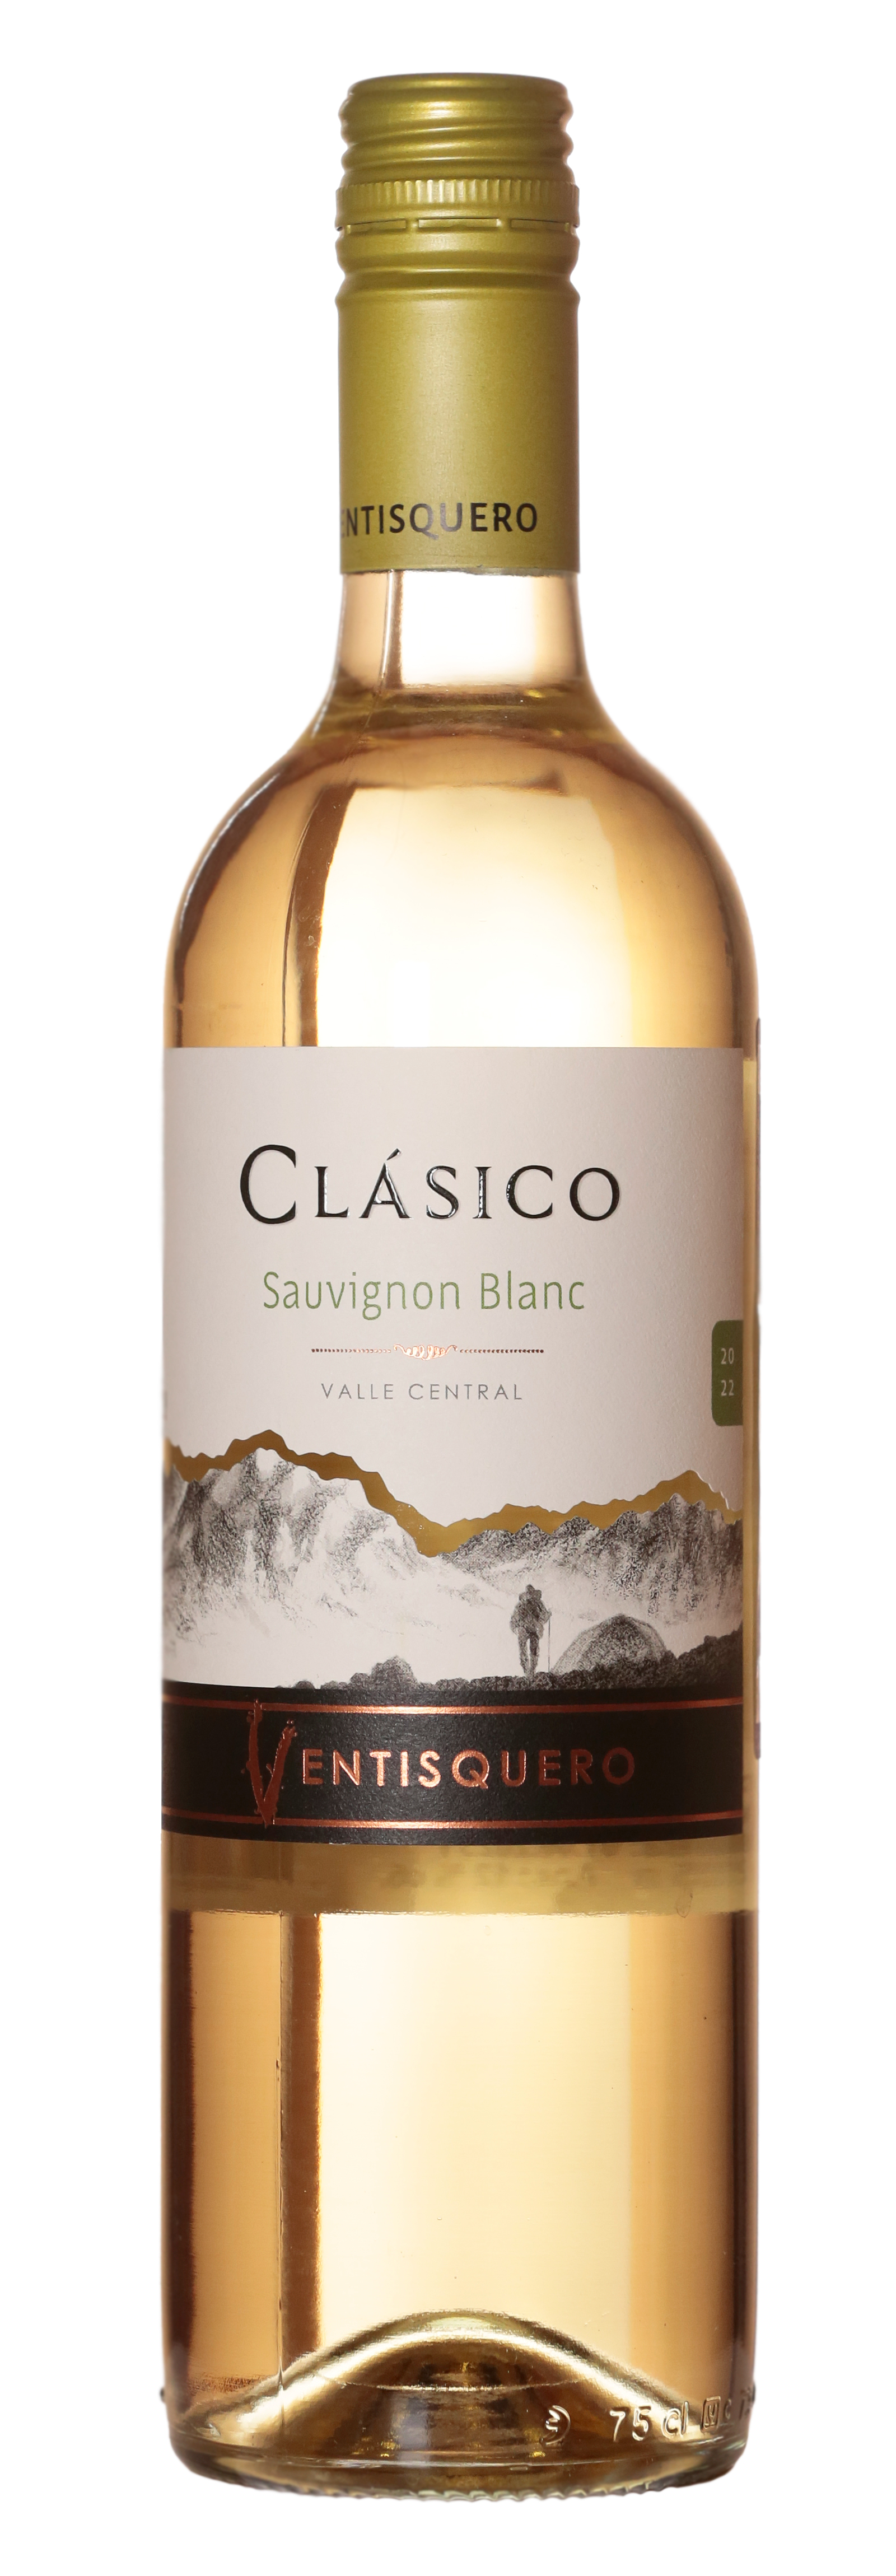 Wine Ventisquero Clasico Sauvignon Blanc